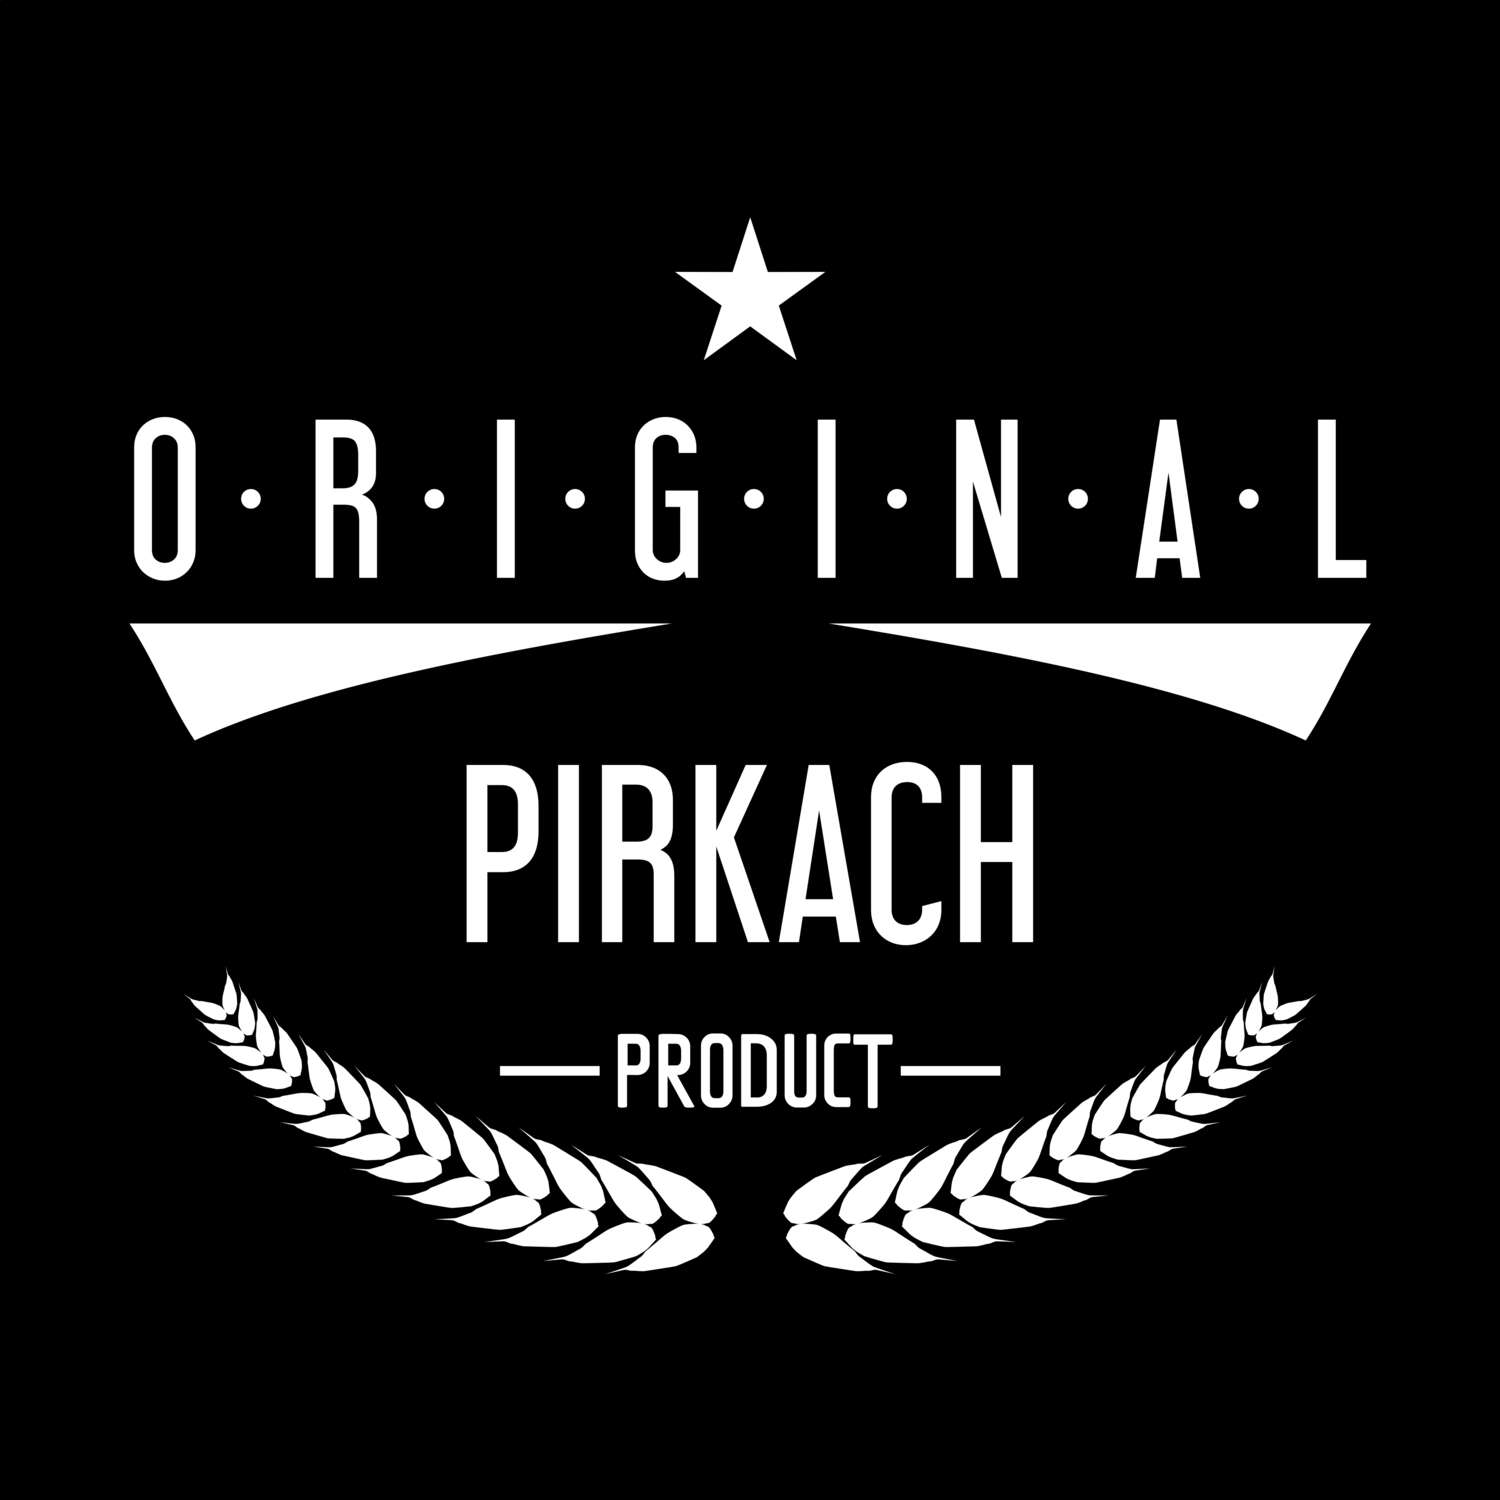 Pirkach T-Shirt »Original Product«